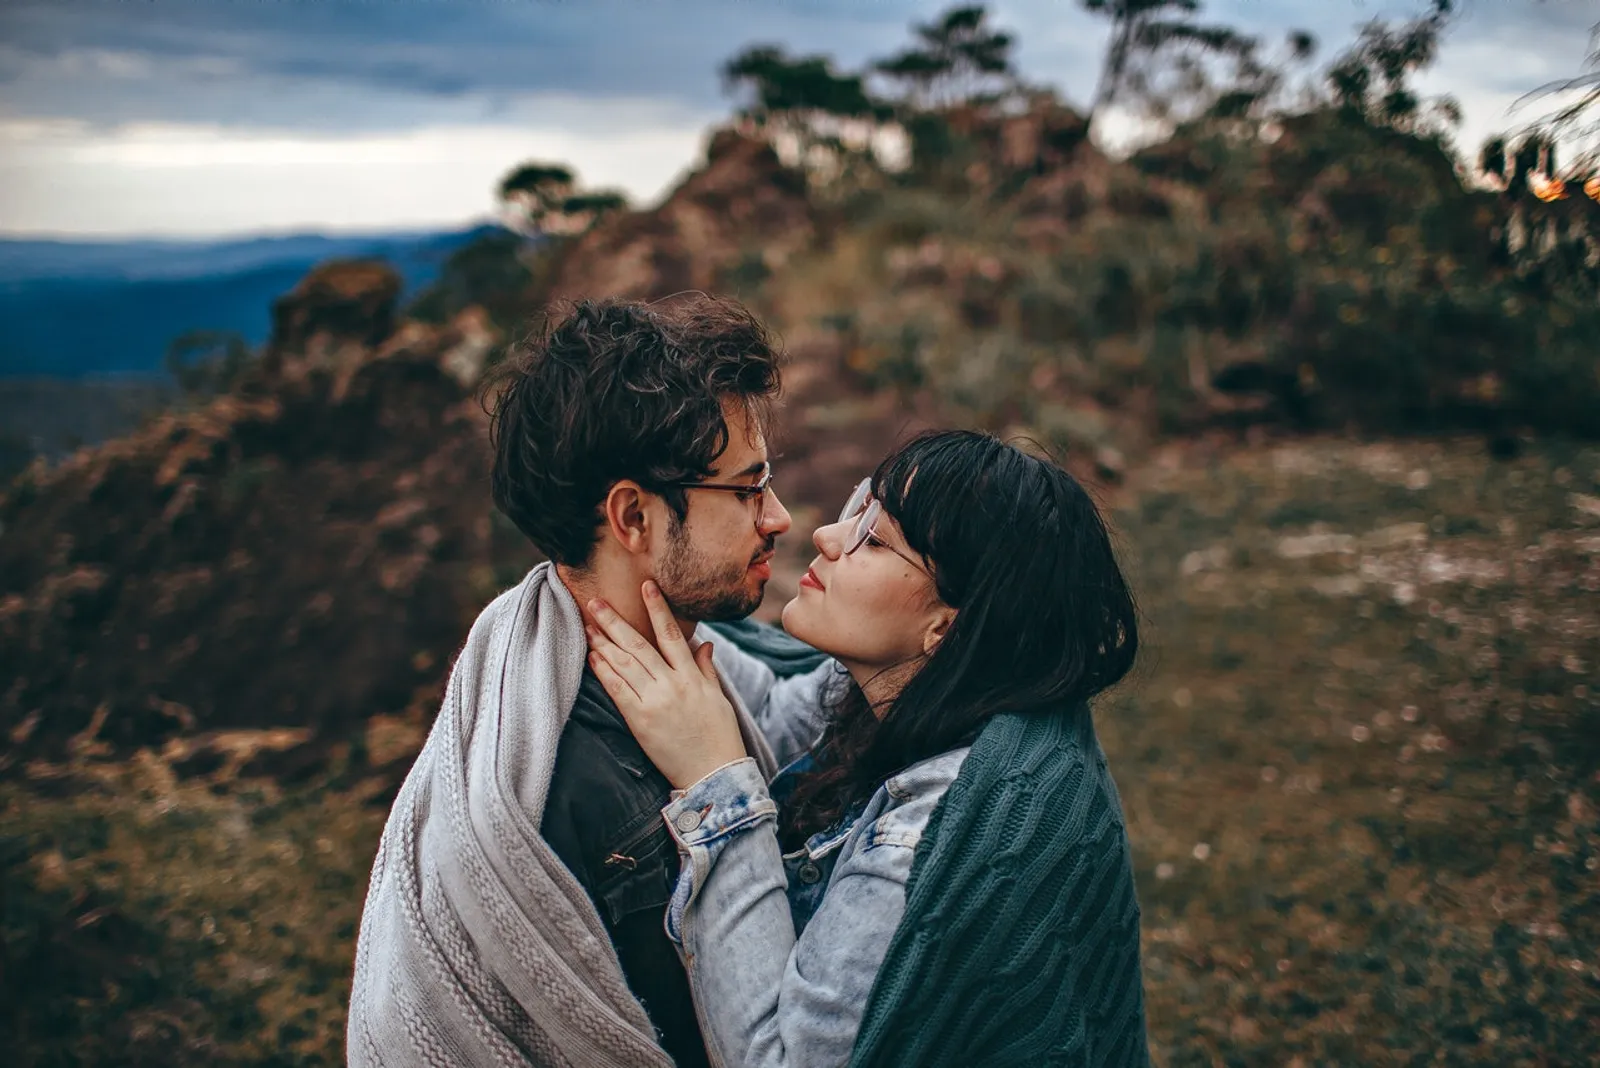 Hindari 15 Relationship Goals Ini, Bikin Hubungan Nggak Sehat!